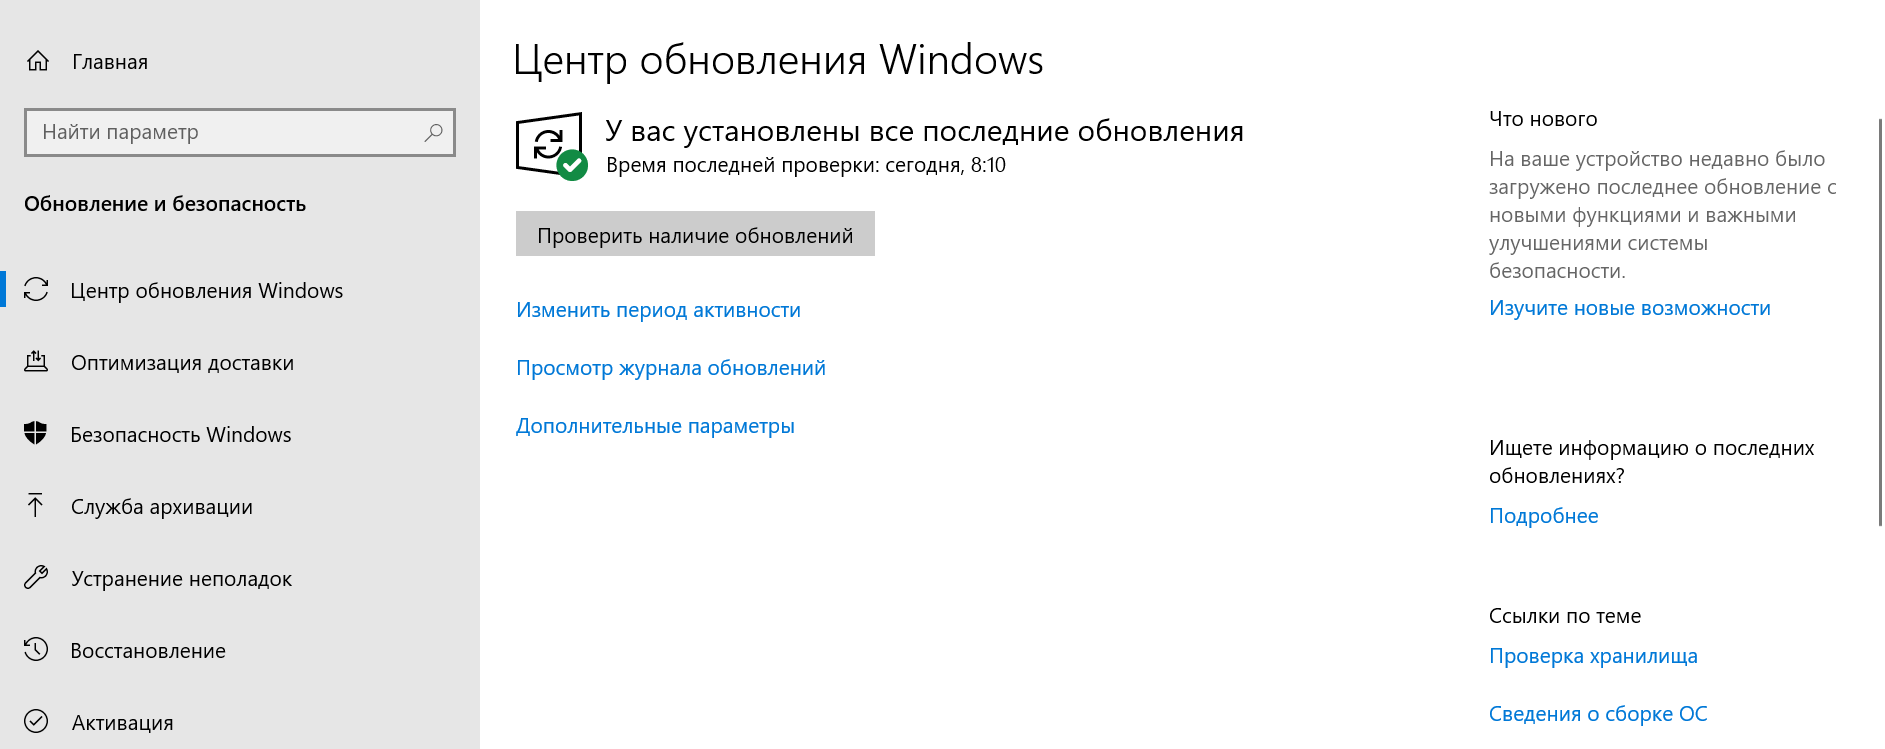 Windows 10 параметры обновление и безопасность. Где найти параметры безопасности Windows 10. Обновление и безопасность где находится. Обновление и безопасность Windows 10 где находится. Запустить центр безопасности